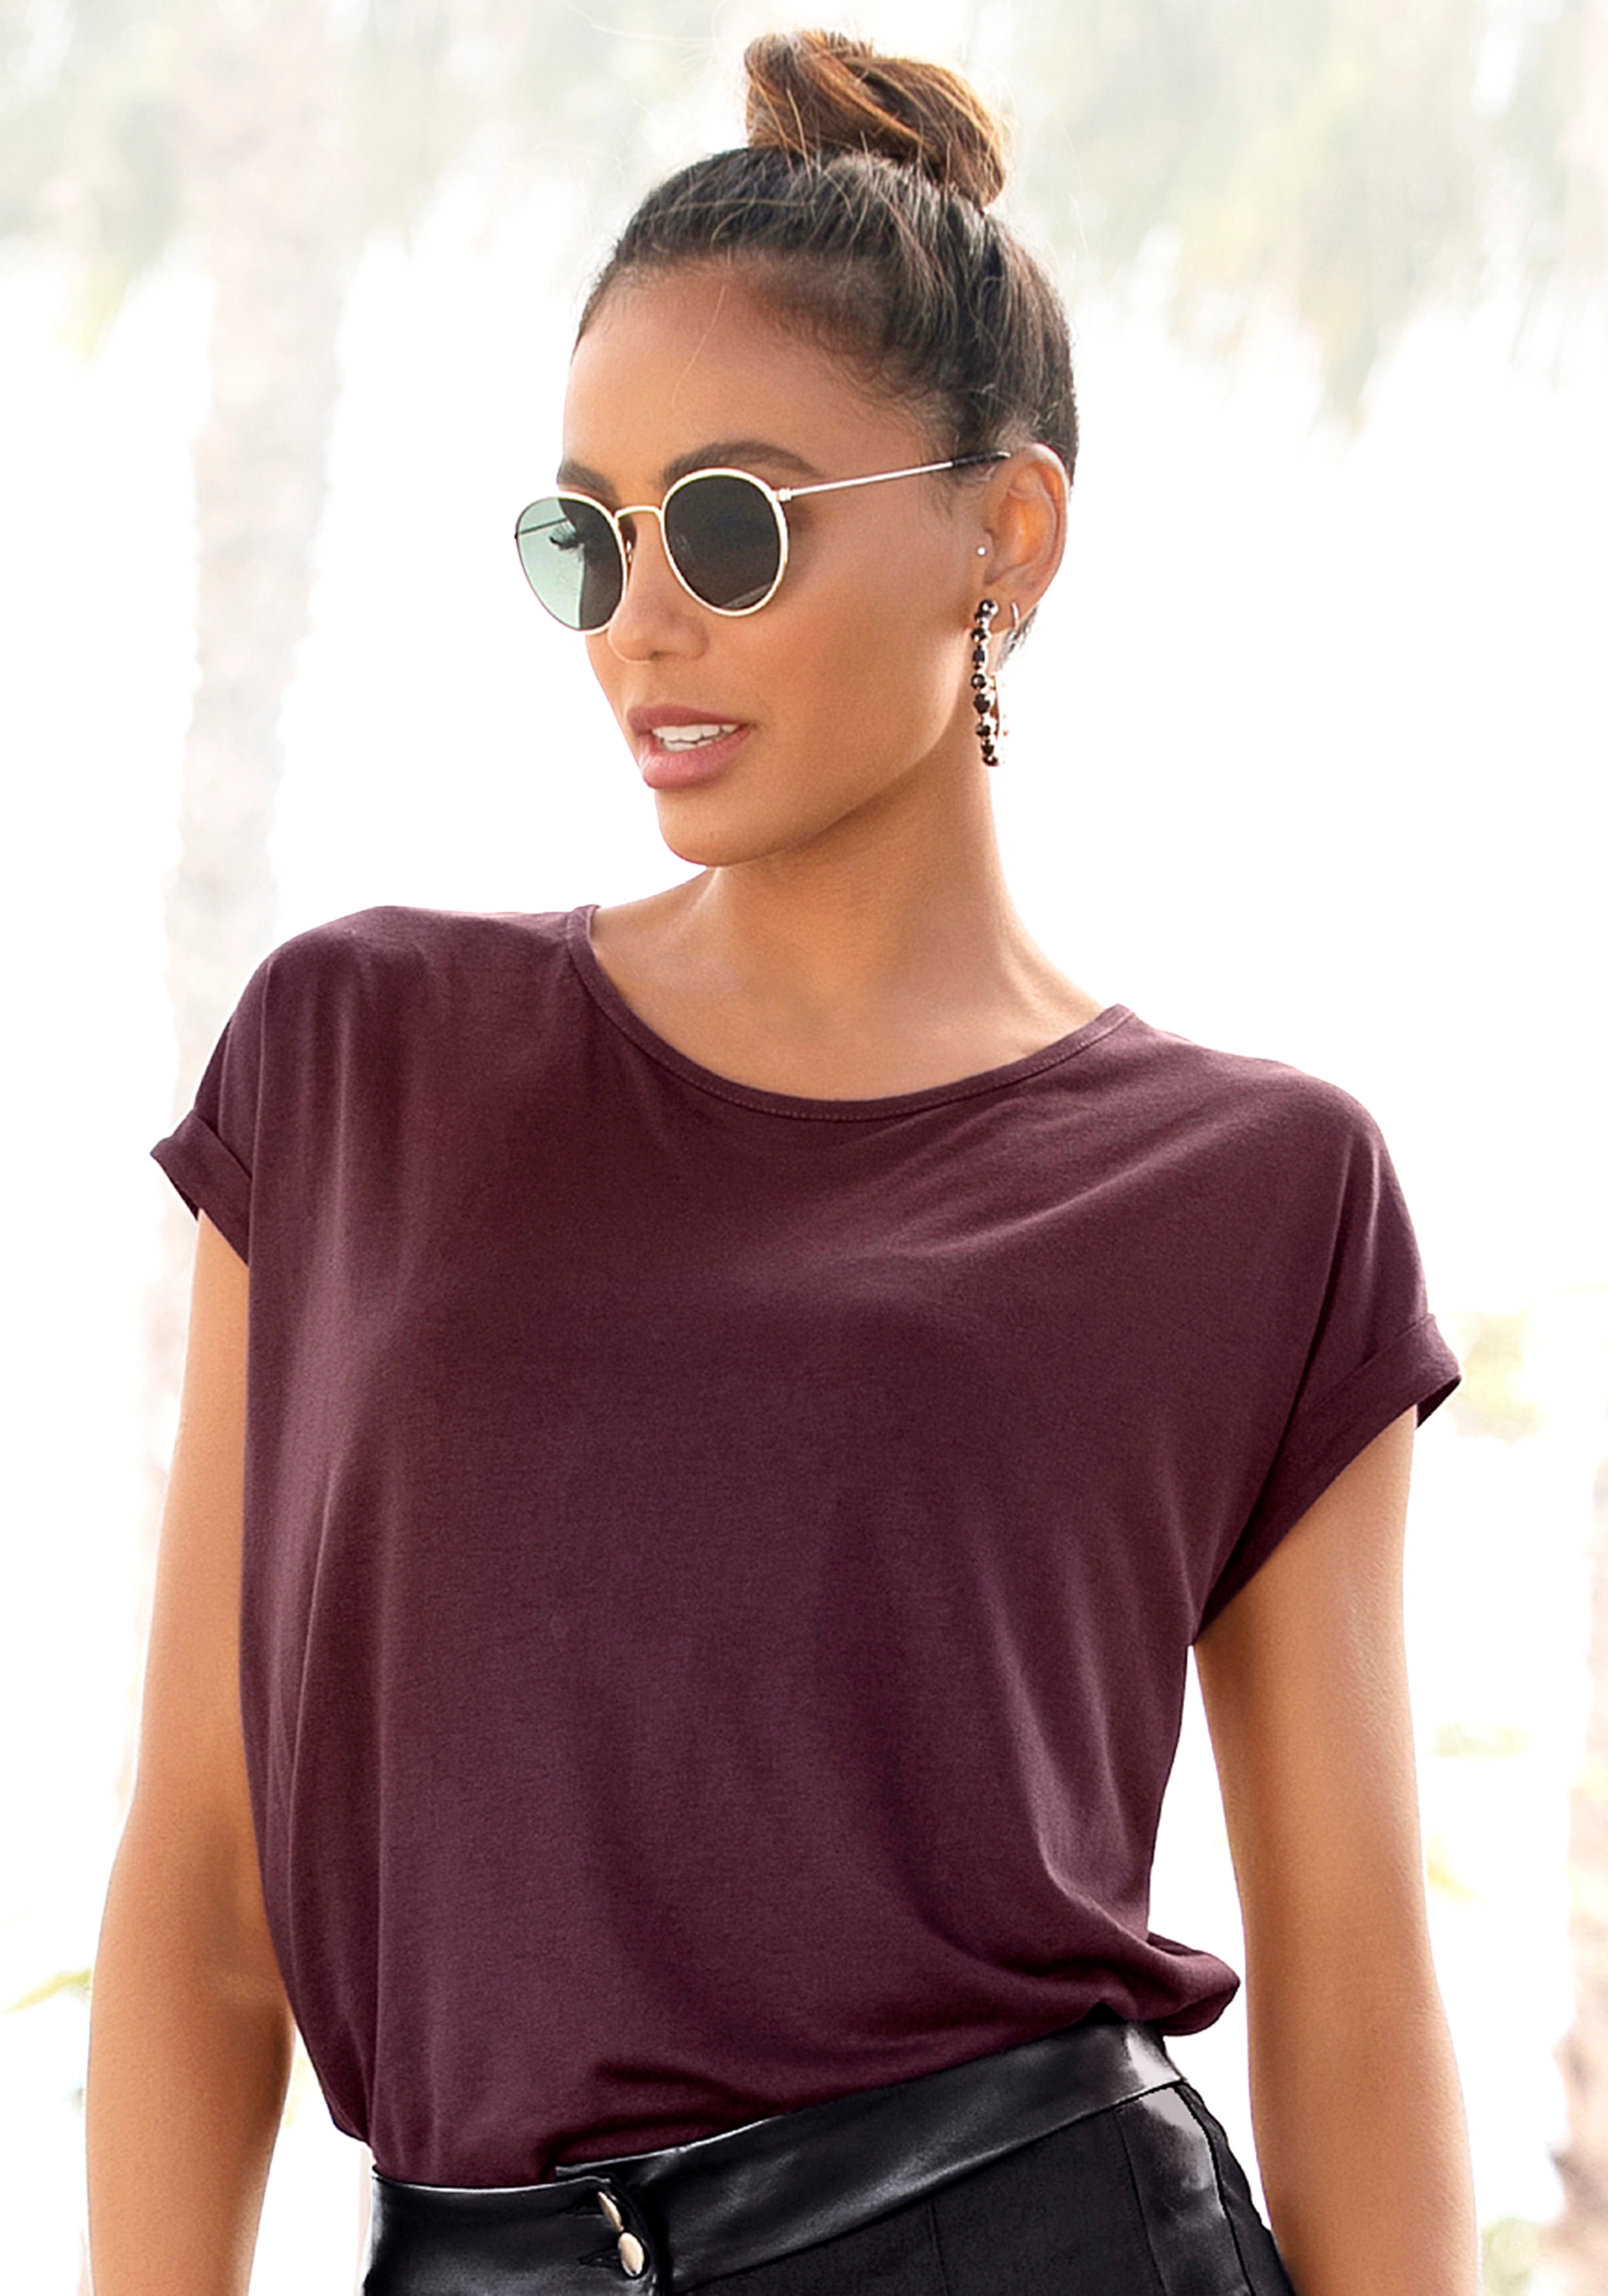 LASCANA Kurzarmshirt im Basic-Style, T-Shirt aus weicher Viskose günstig online kaufen